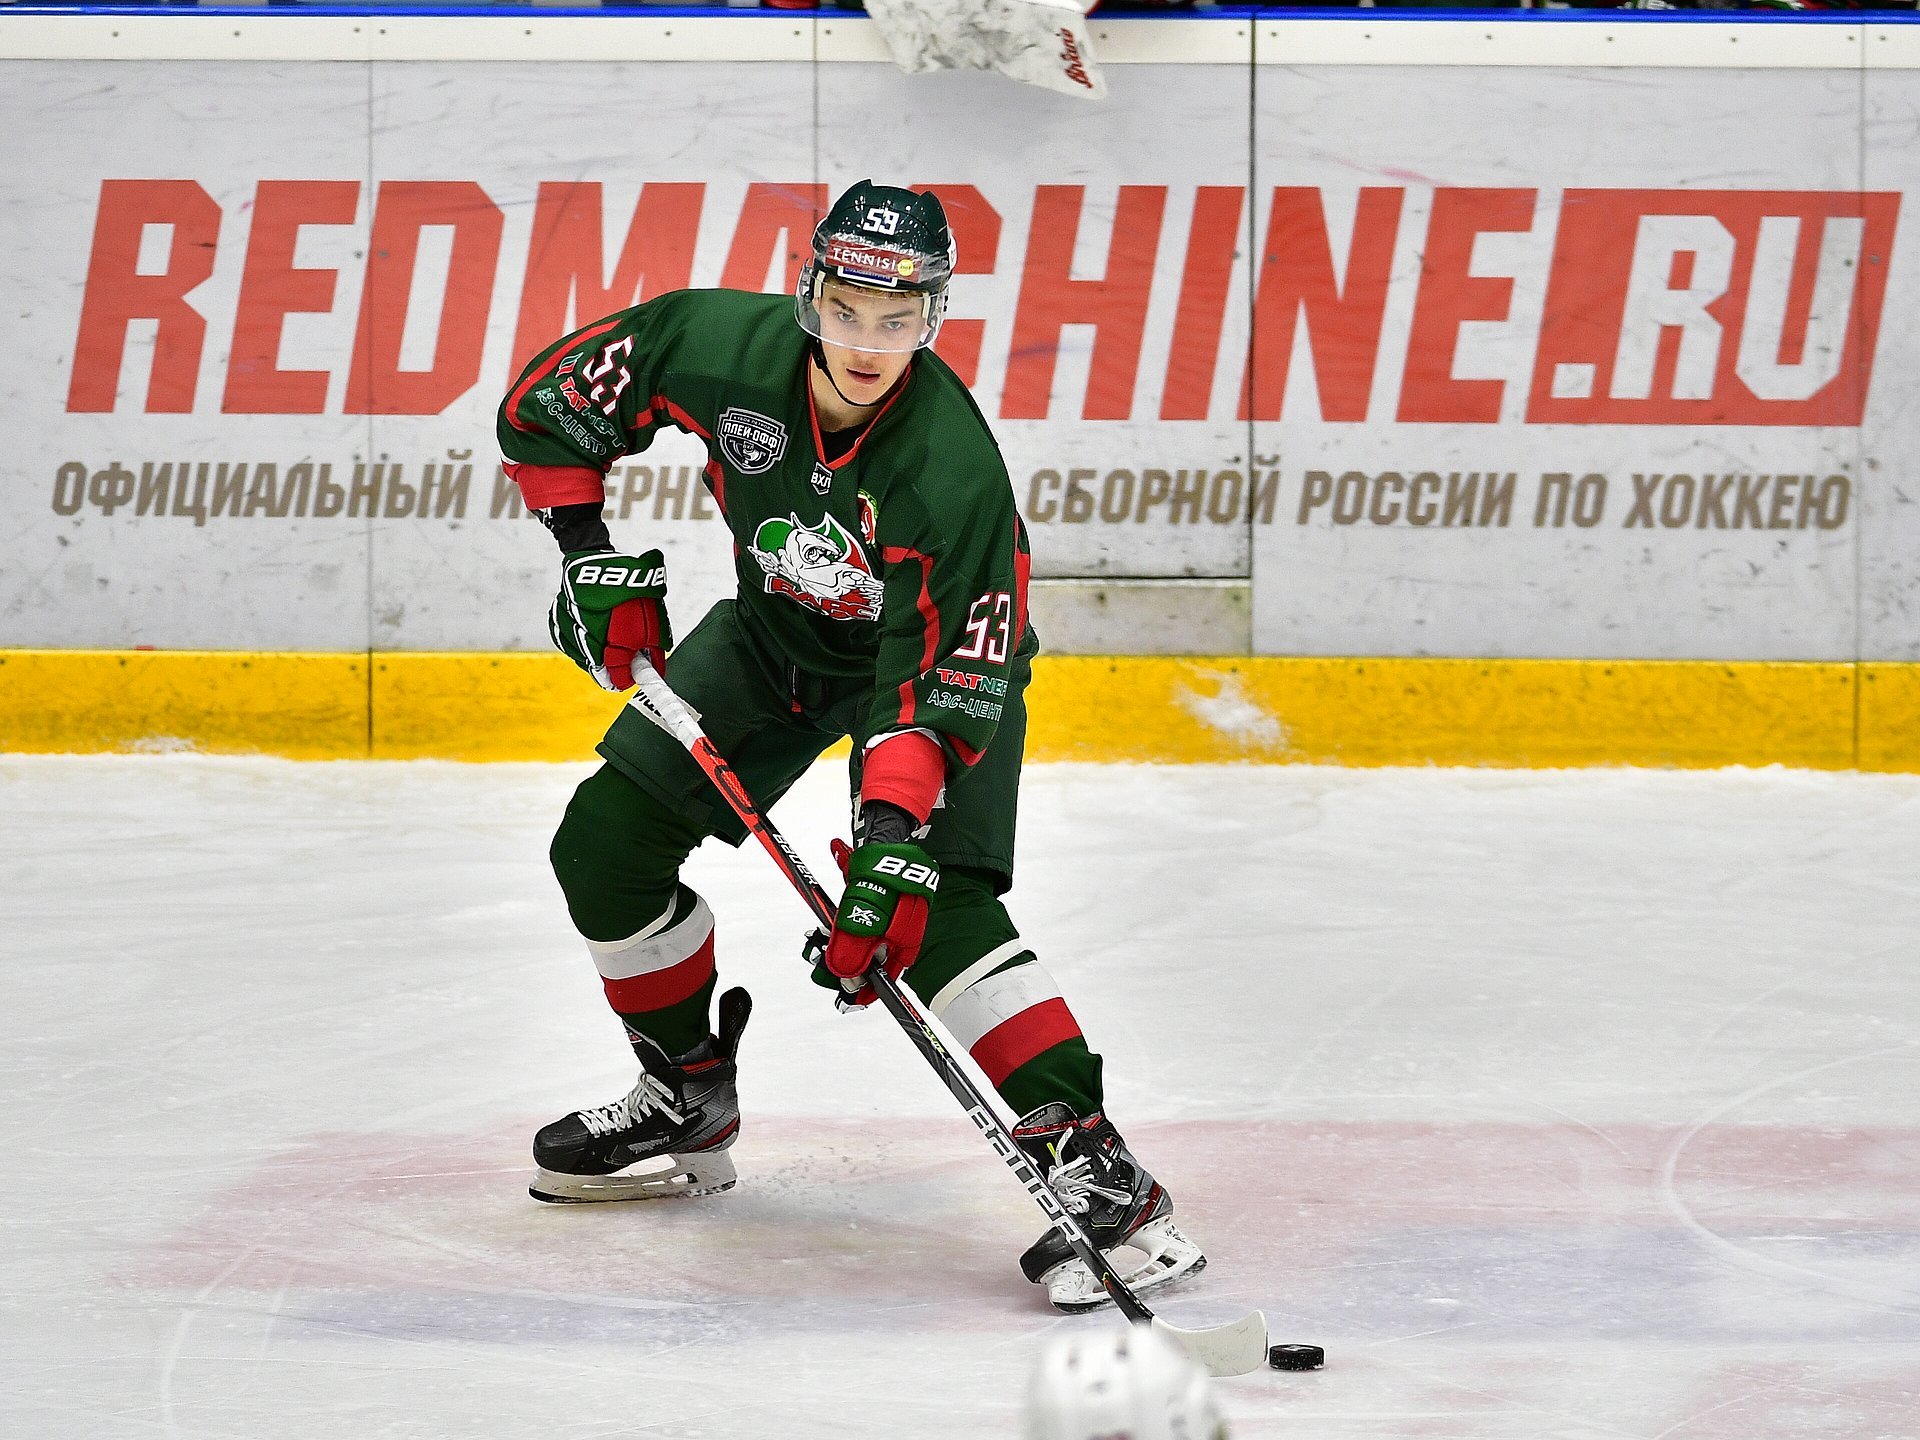 Российские хоккеисты прибыли на просмотр в ХК "Витебск"